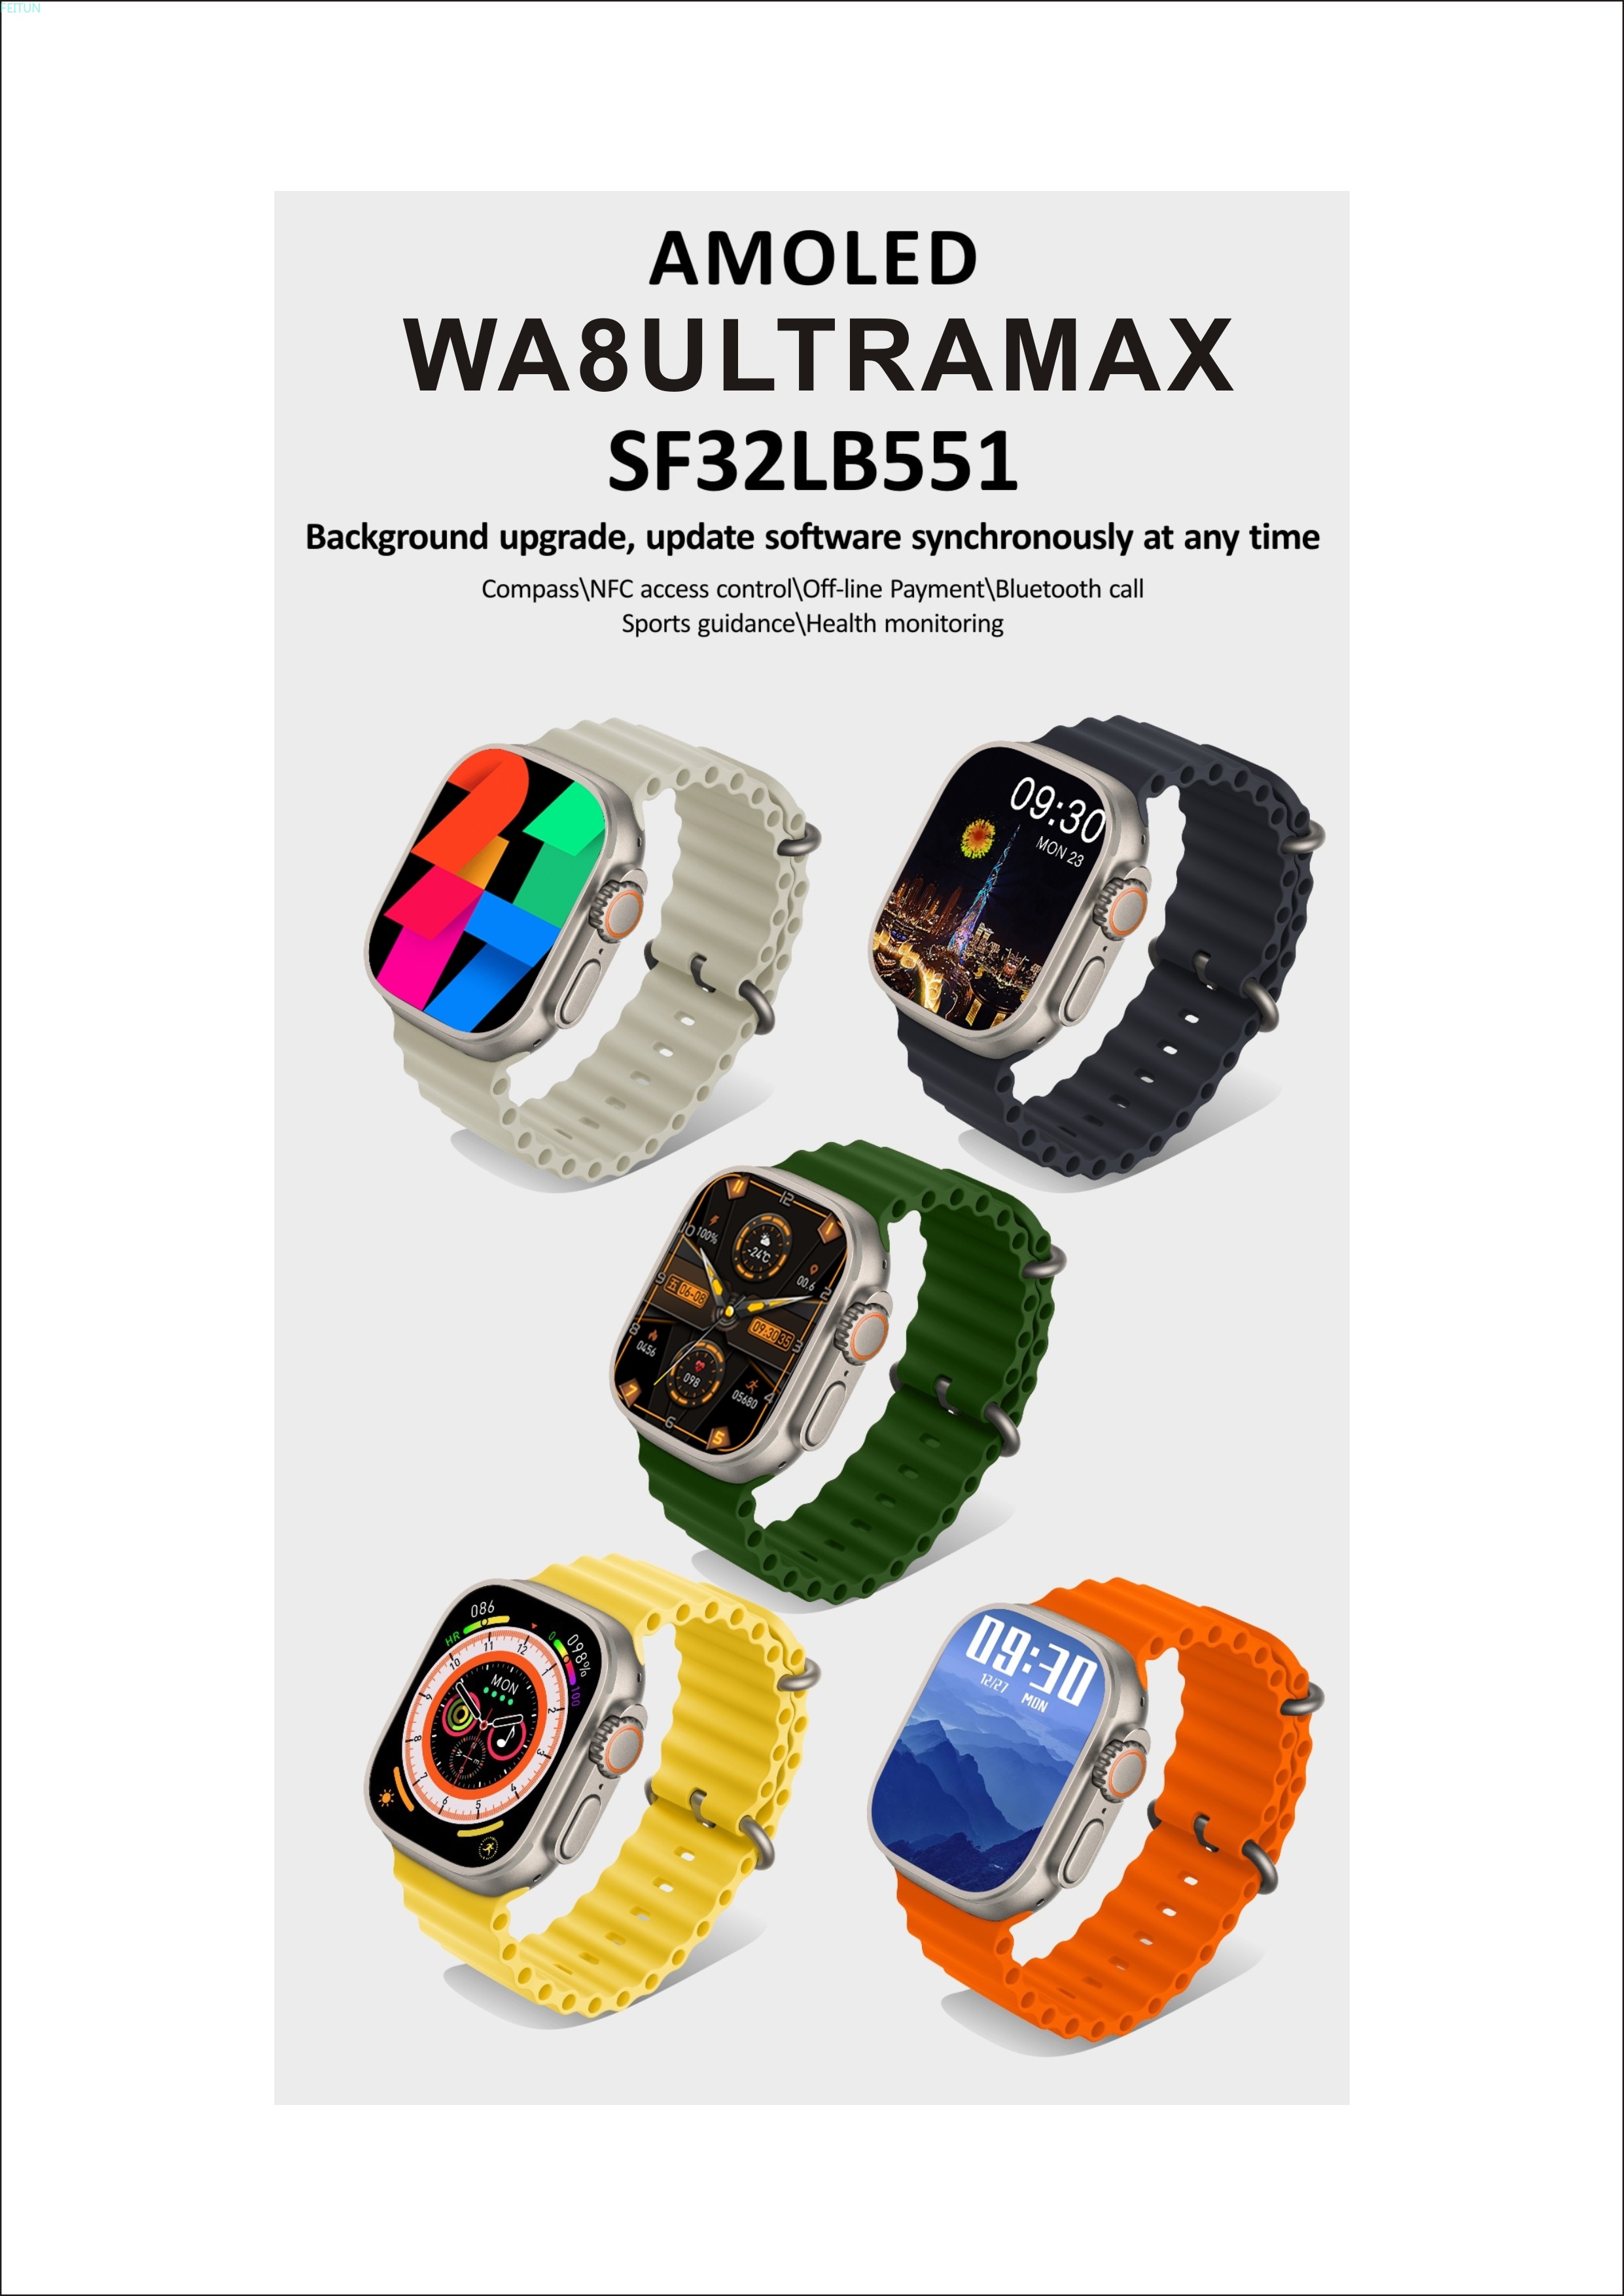 WA8 ULTRA MAX智能手环详情1